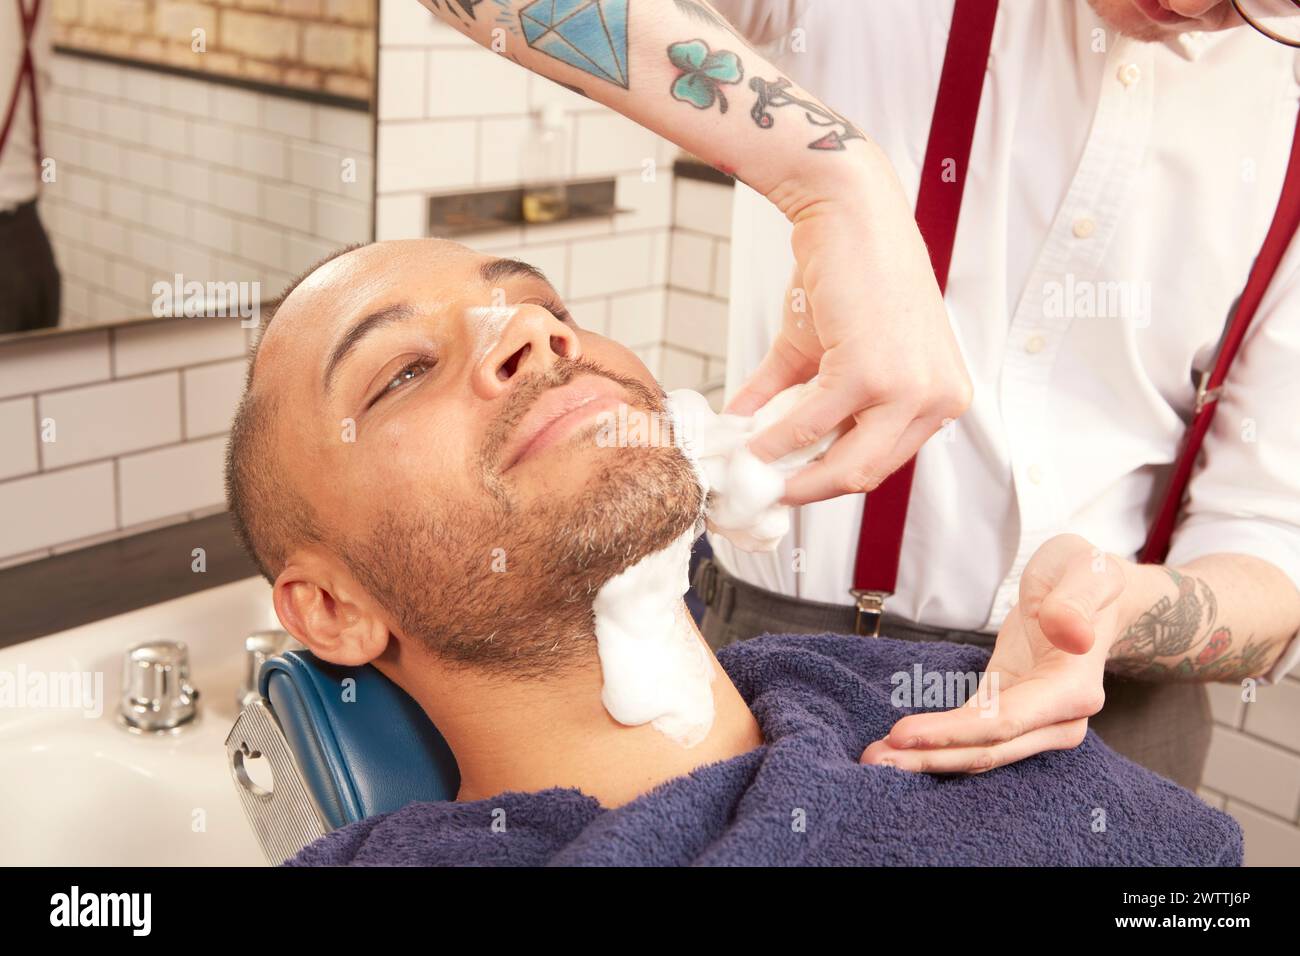 Friseur, der Rasiercreme auf das Gesicht des Kunden aufträgt Stockfoto